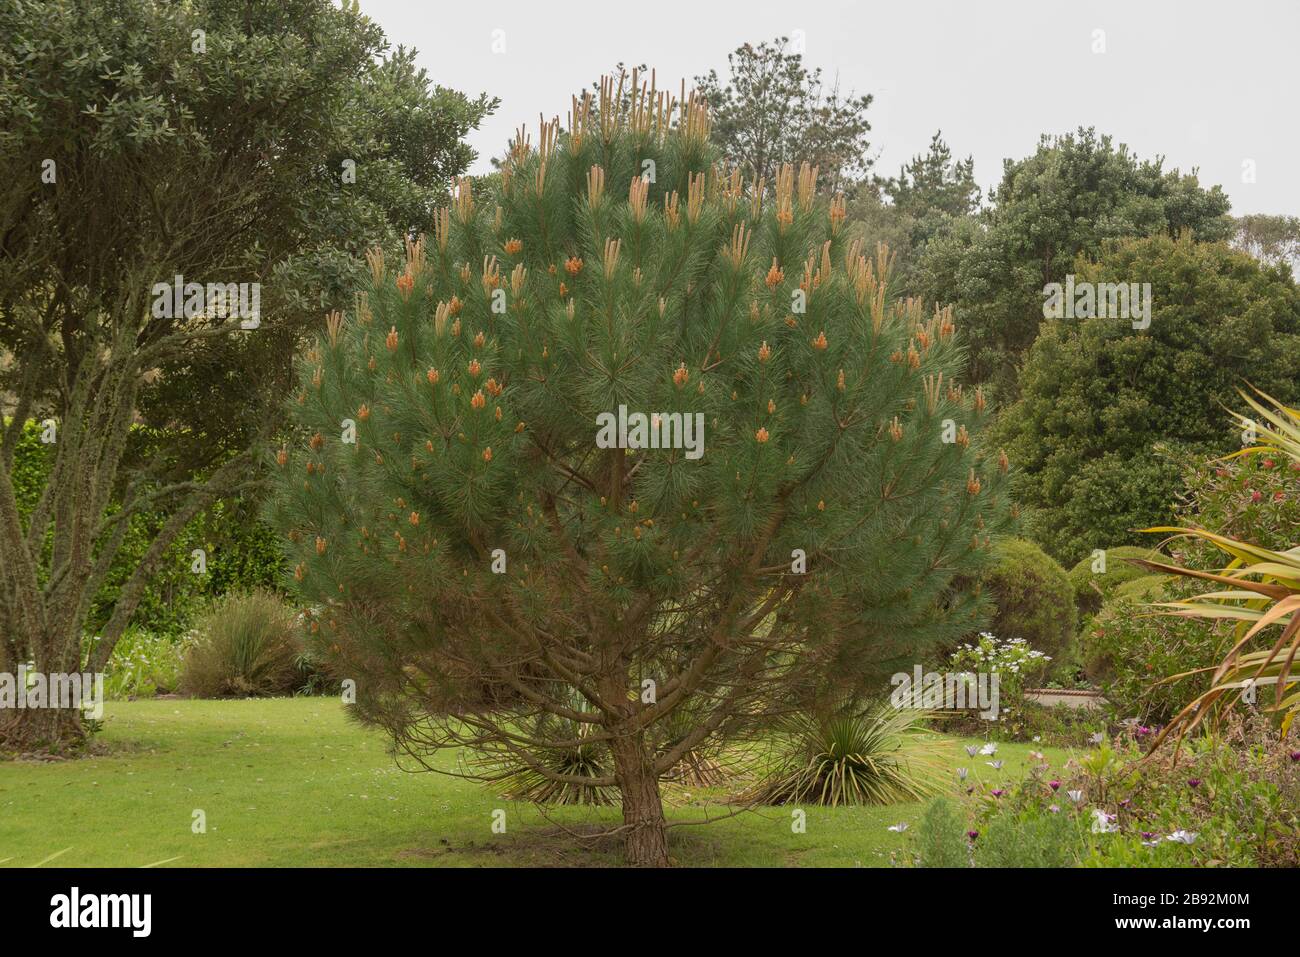 Pinus Thunbergii (pino nero giapponese) in un giardino sull'isola di Tresco, nelle isole di Scilly, Inghilterra, Regno Unito Foto Stock